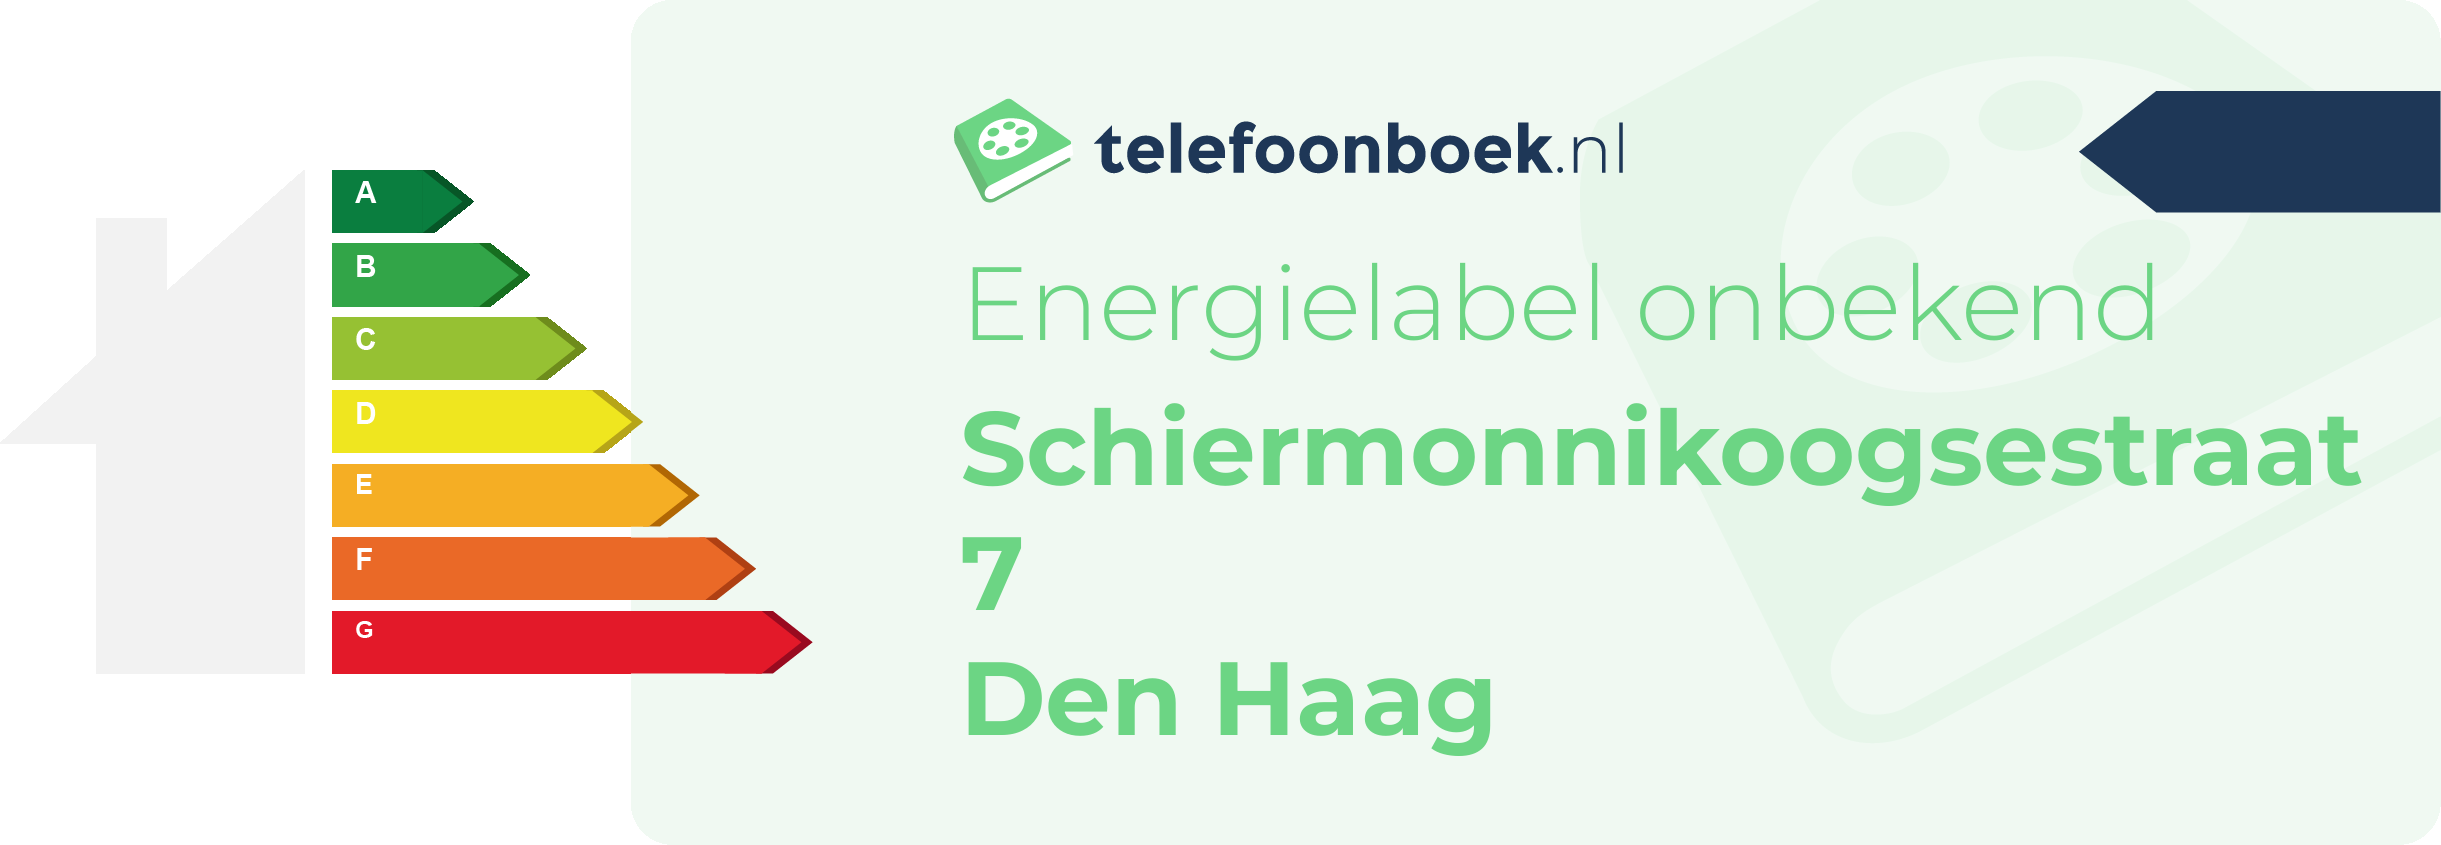 Energielabel Schiermonnikoogsestraat 7 Den Haag